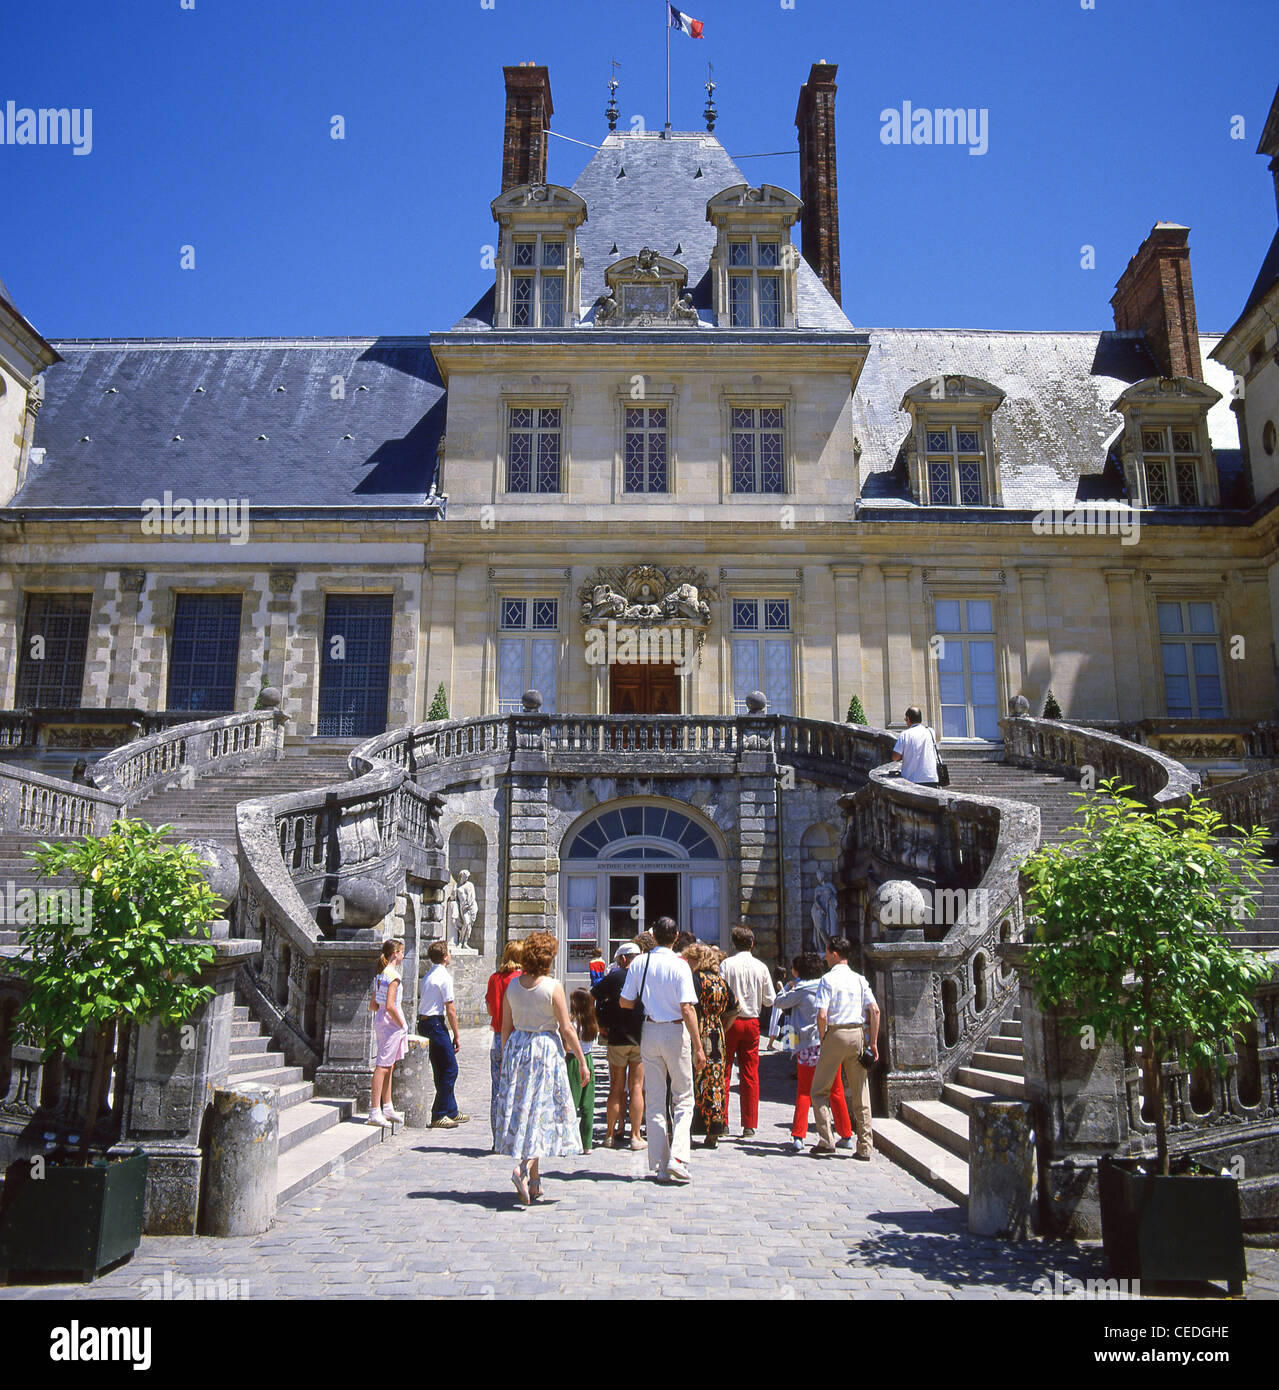 The Palace of Fontainebleau, Fontainebleau, Paris, Île-de-France, France Stock Photo